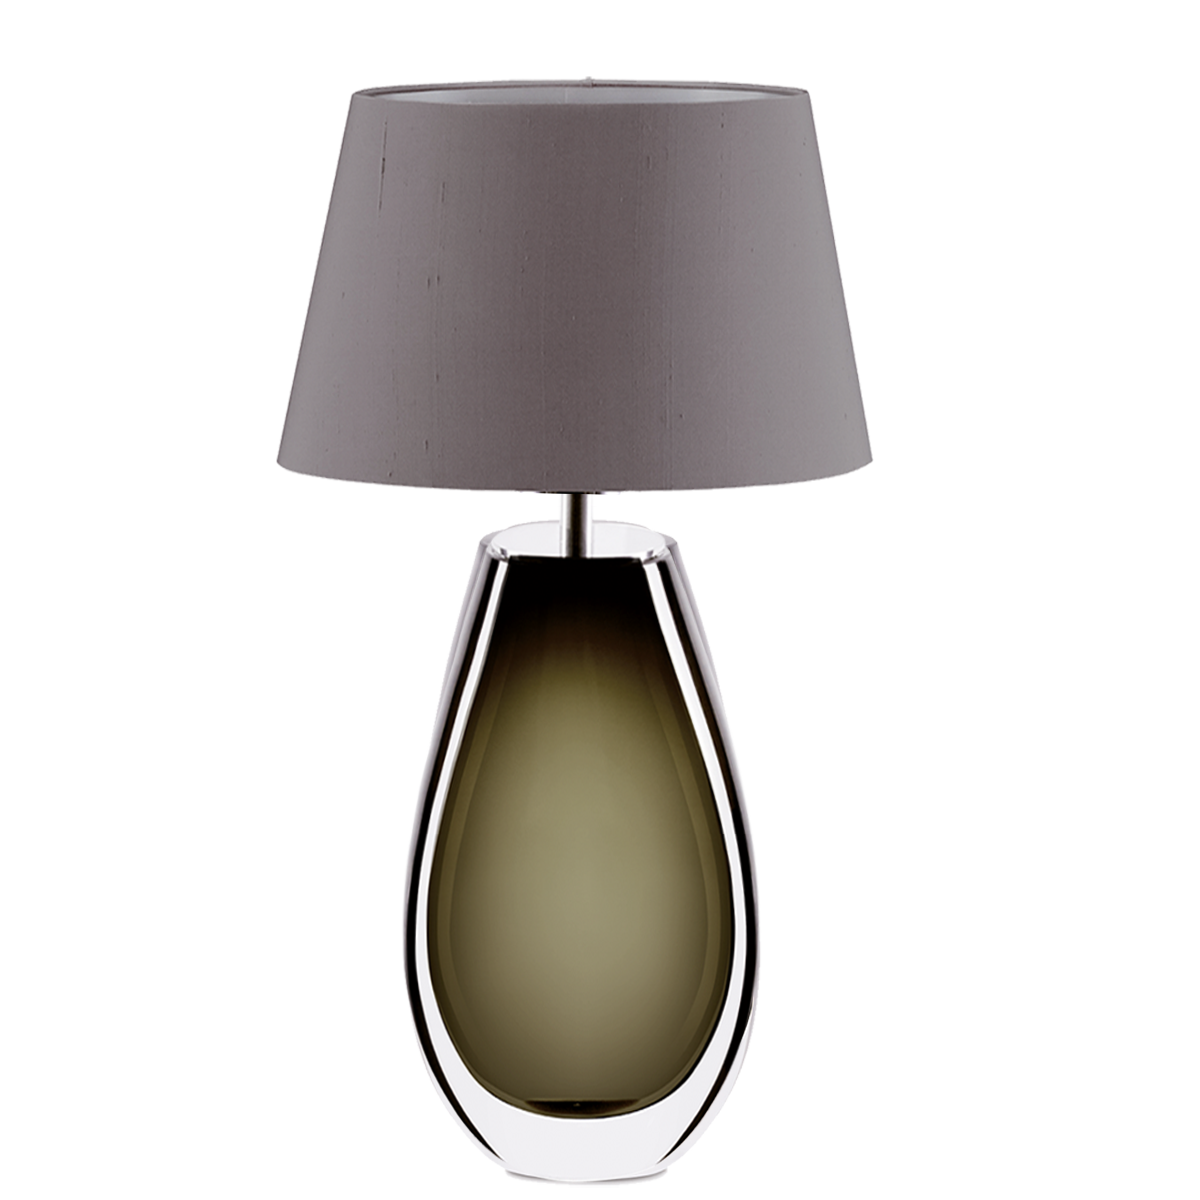 Murana 4 exklusive große ovale Tischleuchte, Glas im Farbton Olive, mit Seiden Lampenschirm Menzel Leuchten Manufaktur